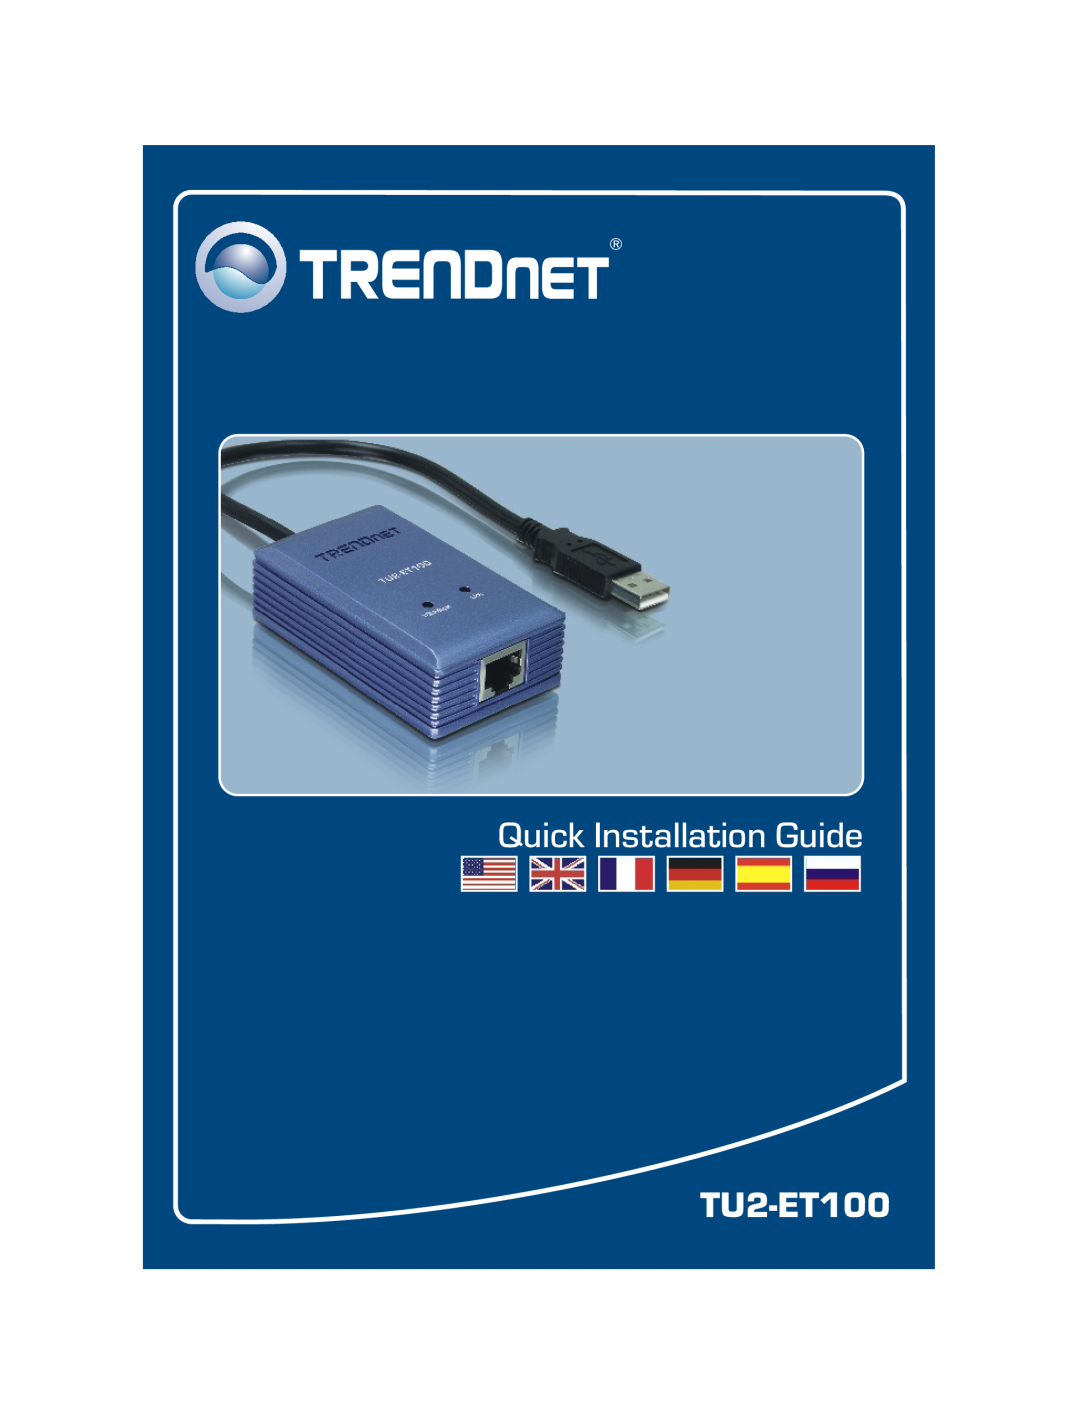 TRENDnet TU2-ET100 manual Quick Installation Guide 